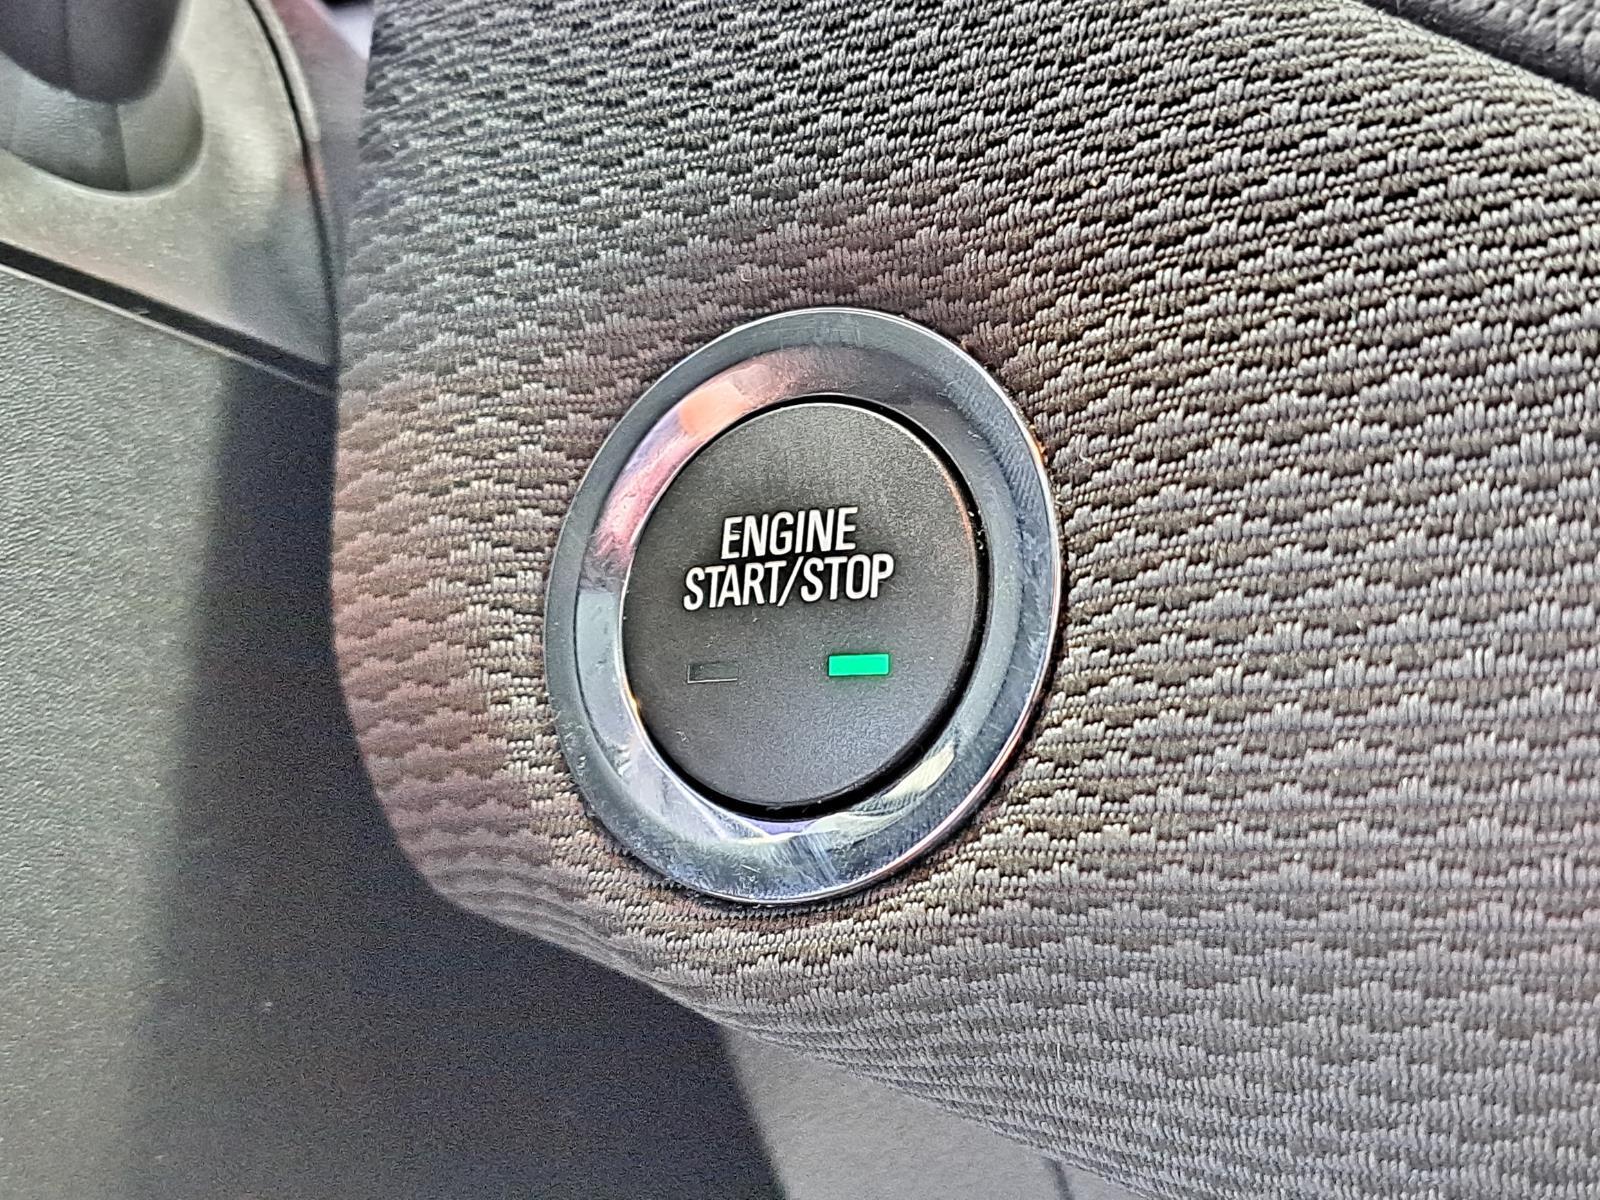 2019 Chevrolet Cruze LT Hatchback 4 Dr. Front Wheel Drive 16